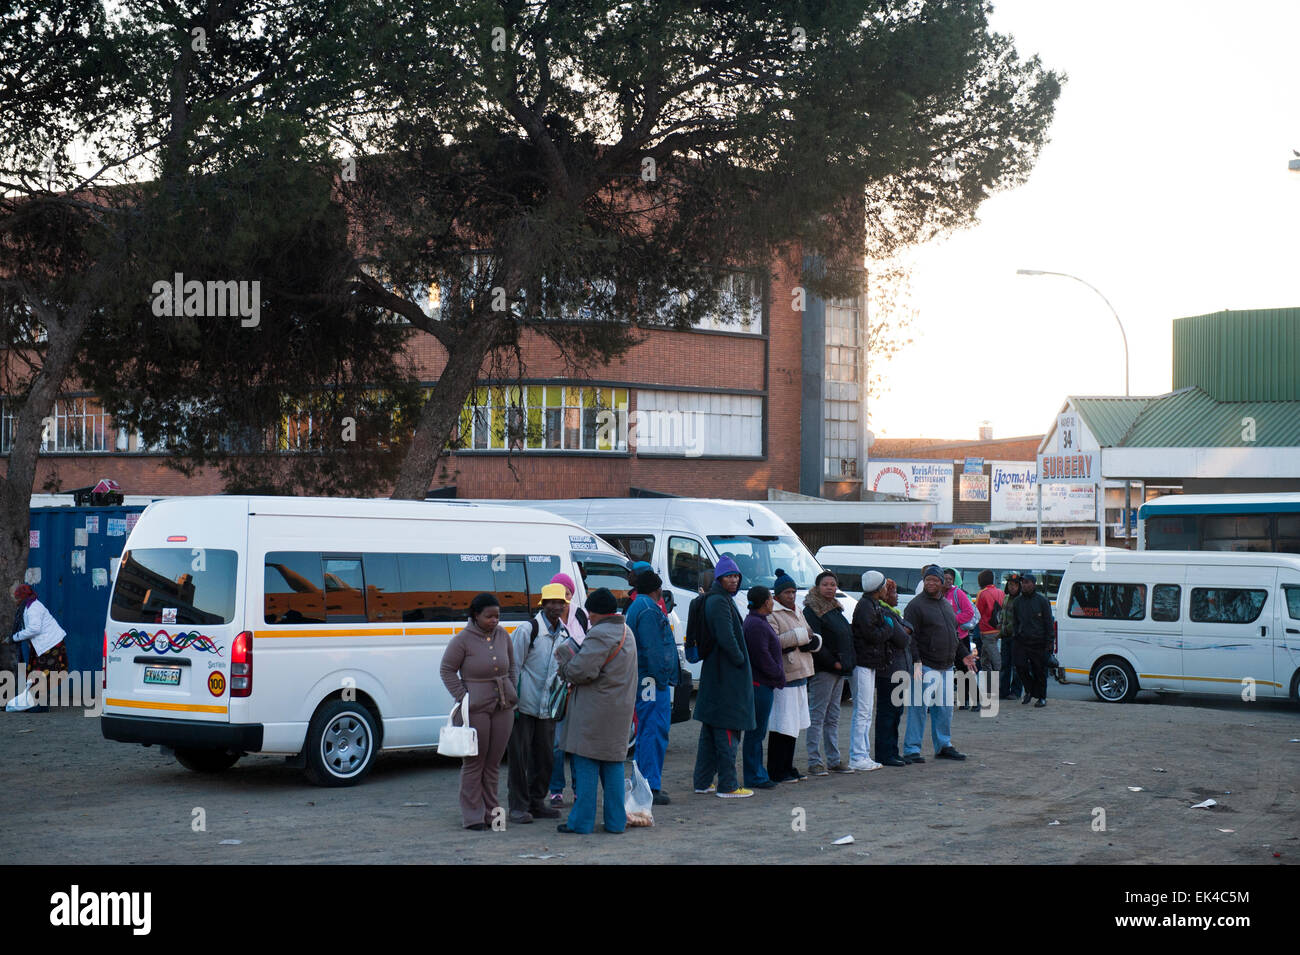 Comme de nombreuses villes africaines, Johannesburg, un système de transport publique informelle chaotique sous la forme de 'minibus taxis'. Ce ne sont pas des taxis dans le sens de l'Ouest typique le terme - elles ne vous donneront pas un ascenseur à votre porte. Ils sont plutôt petits services de bus, souvent sans marquage, avec horaires ni formelle ni s'arrête. Les taxis sont la forme la moins chère de transport à Johannesburg, et sont le transport quotidien de vie de l'essentiel de la population active. Lire plus : http://www.southafrica.info/travel/advice/joburg.htm# .U9I1MICSxss# ixzz38TZcAqmU Banque D'Images